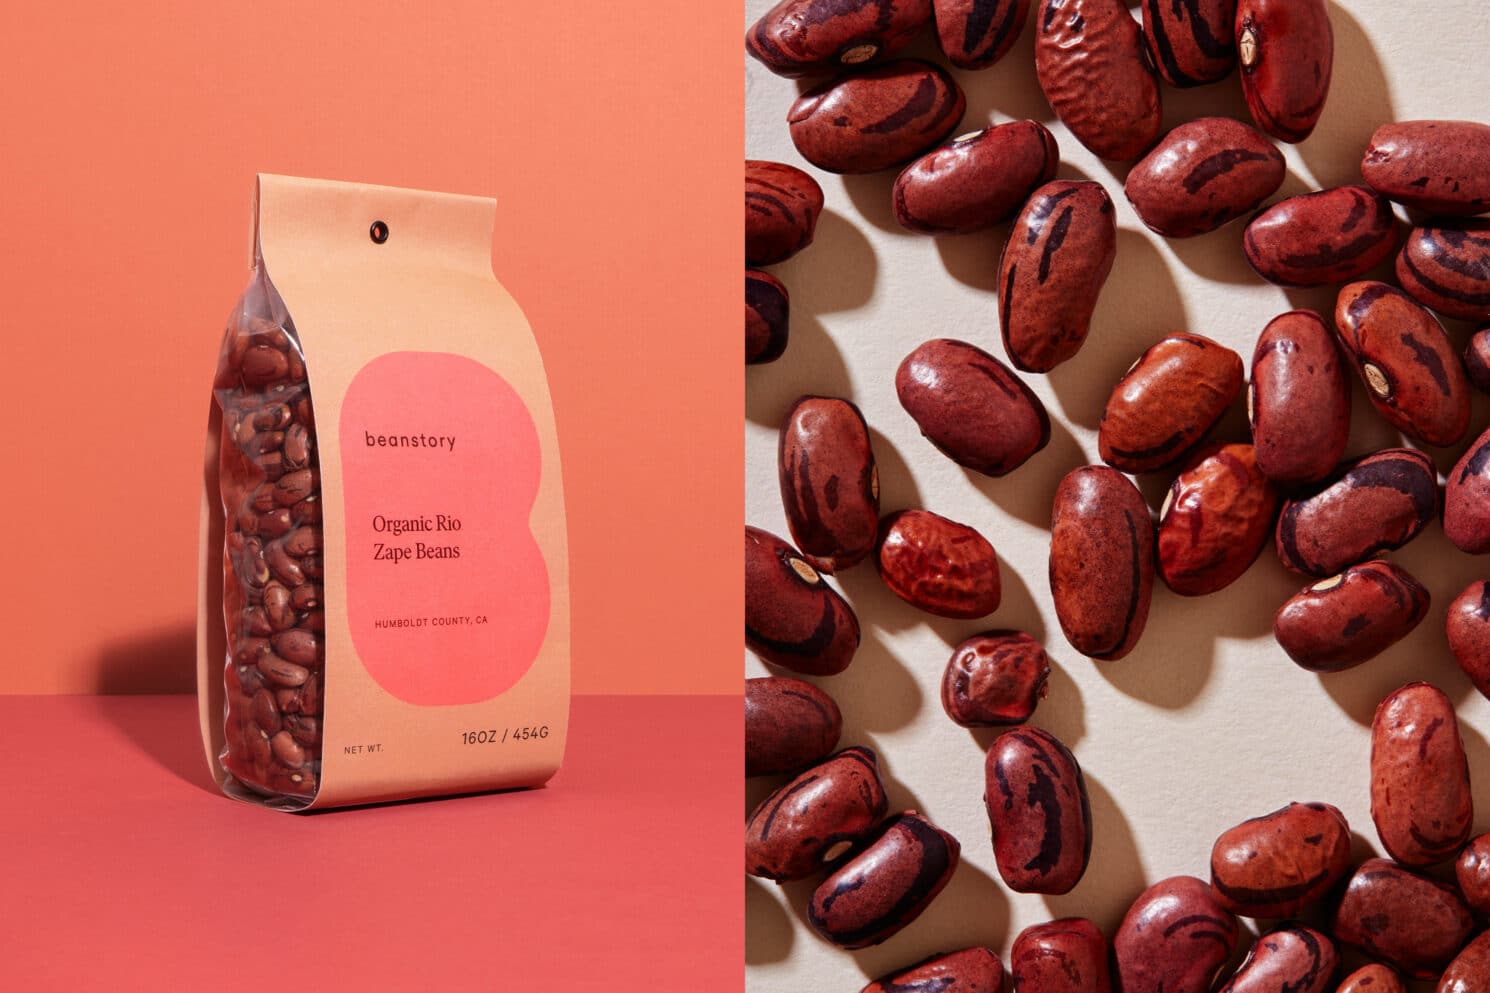 Visual Identity für den Bohnenvertrieb Beanstory: Packaging Design für Zape Beans links mit der Hintergrundfarbe des Logos in rosa. Daneben ein Foto der getrockneten Bohnen ohne Verpackung